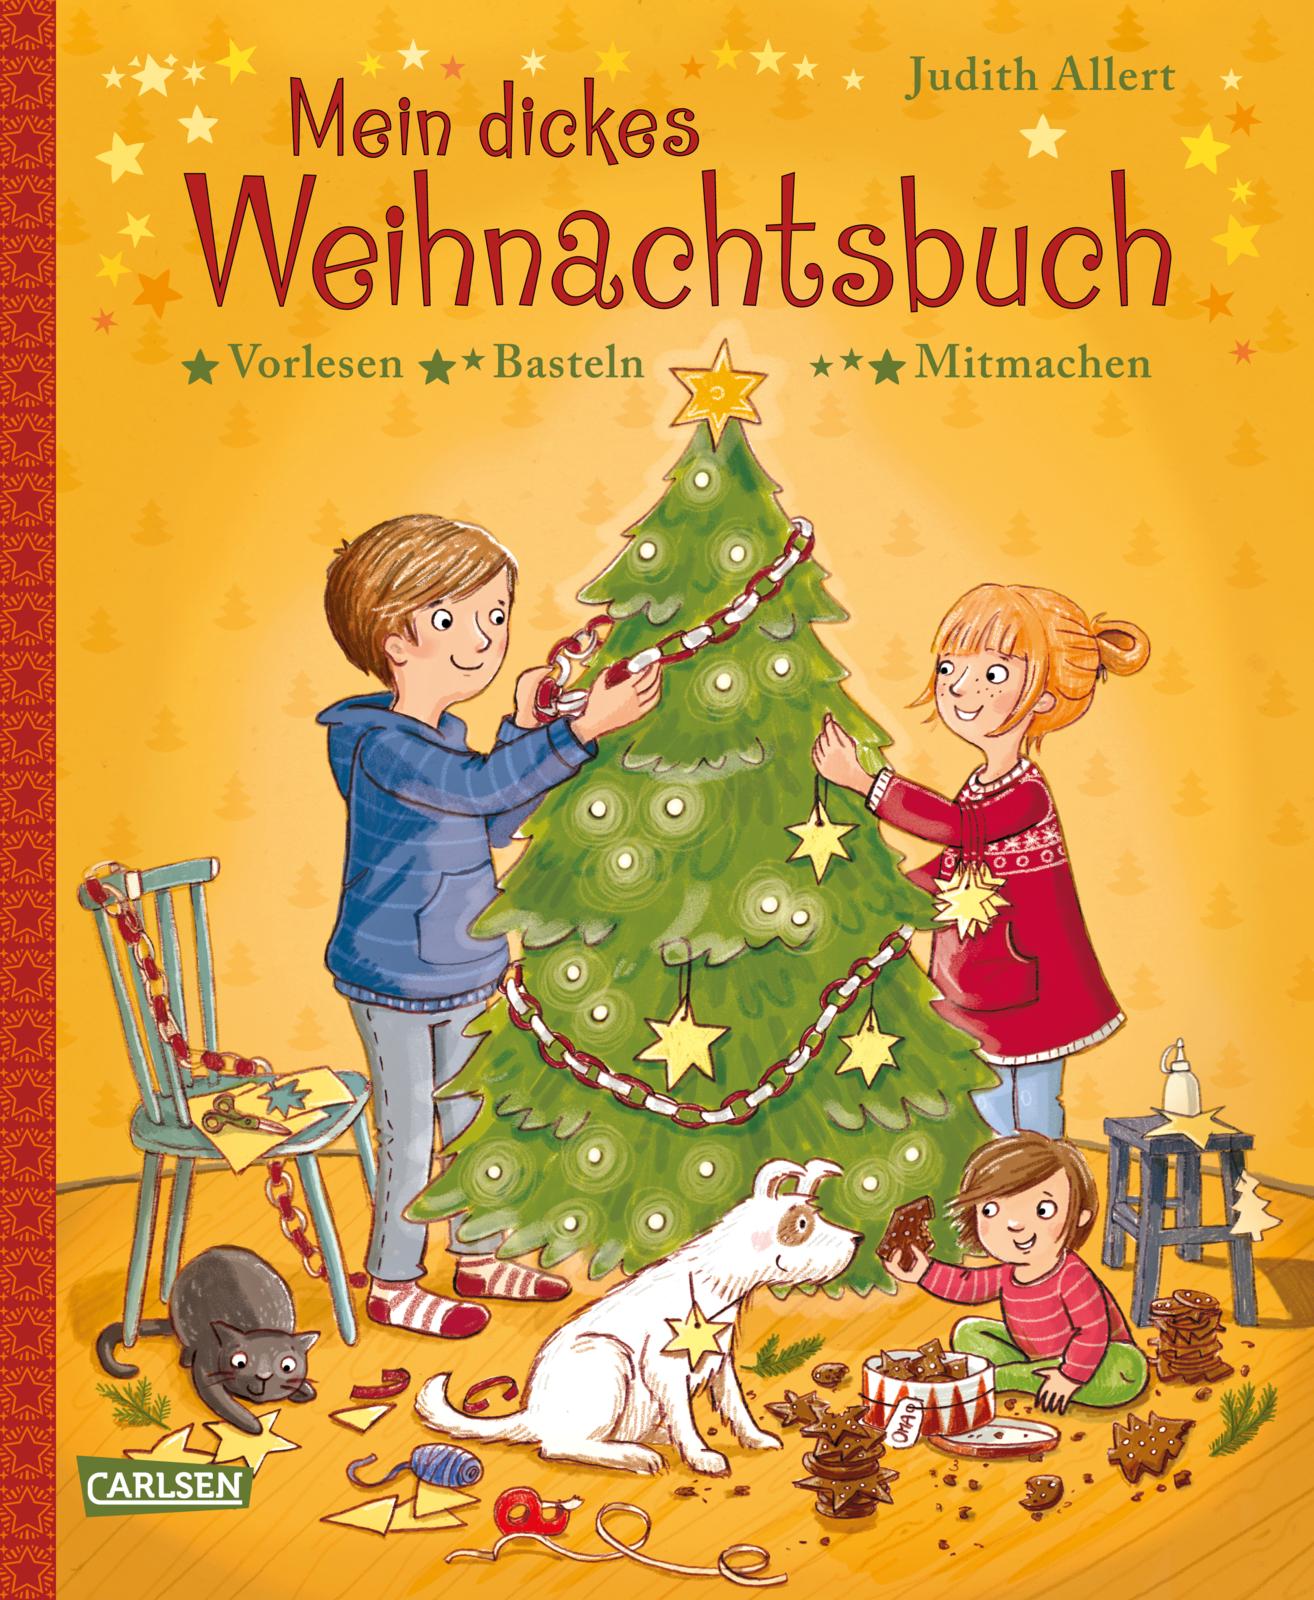 Carlsen Verlag: "Mein dickes Weihnachtsbuch"